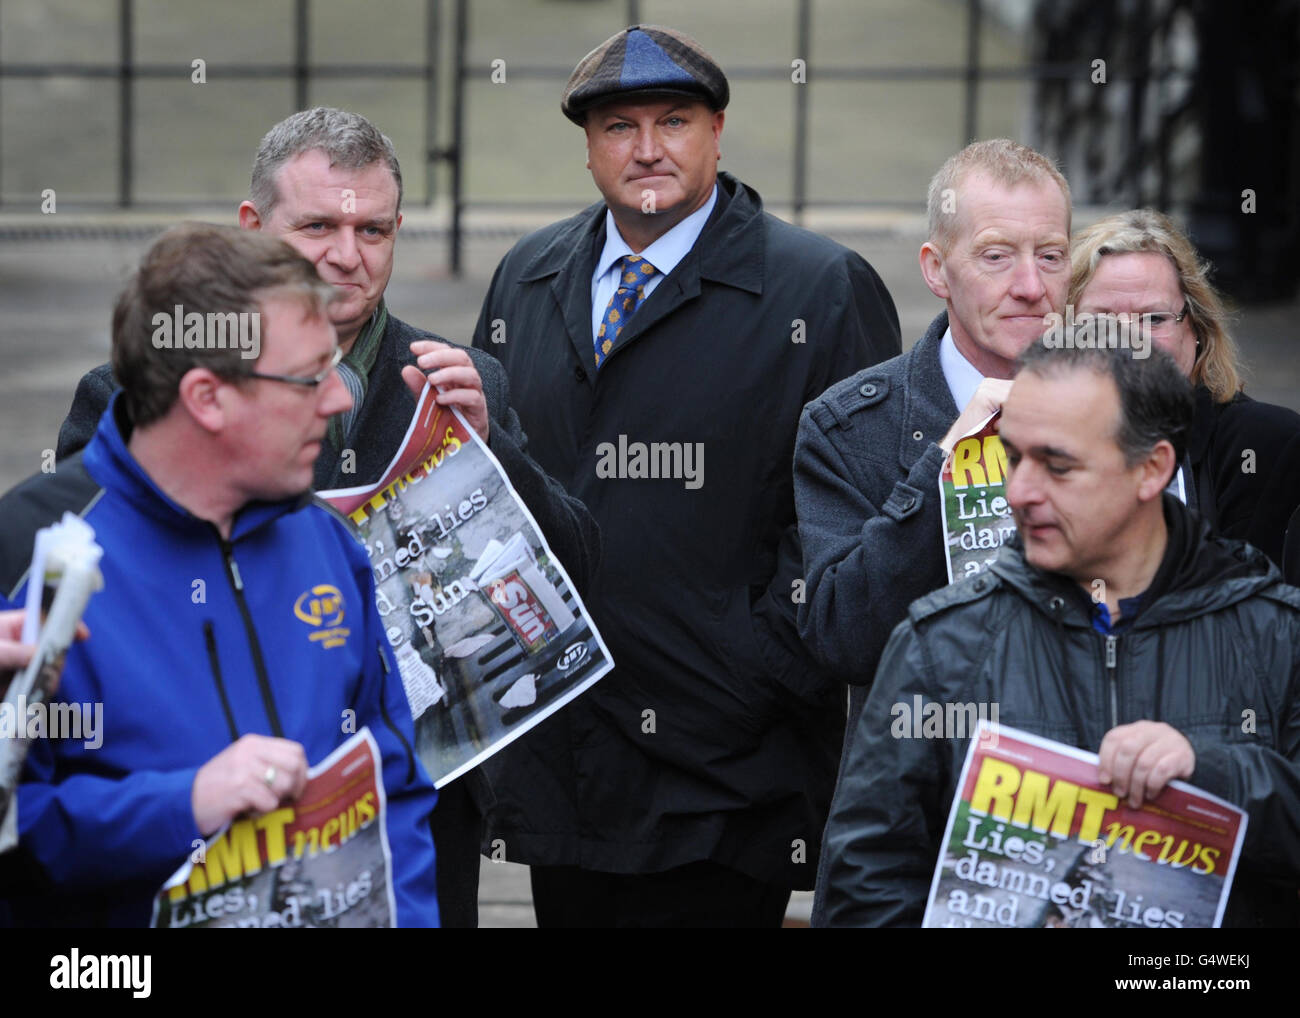 Il Segretario Generale dell'RMT Bob Crow lascia l'inchiesta Leveson a Londra, con i suoi sostenitori dopo aver dato prova. Foto Stock